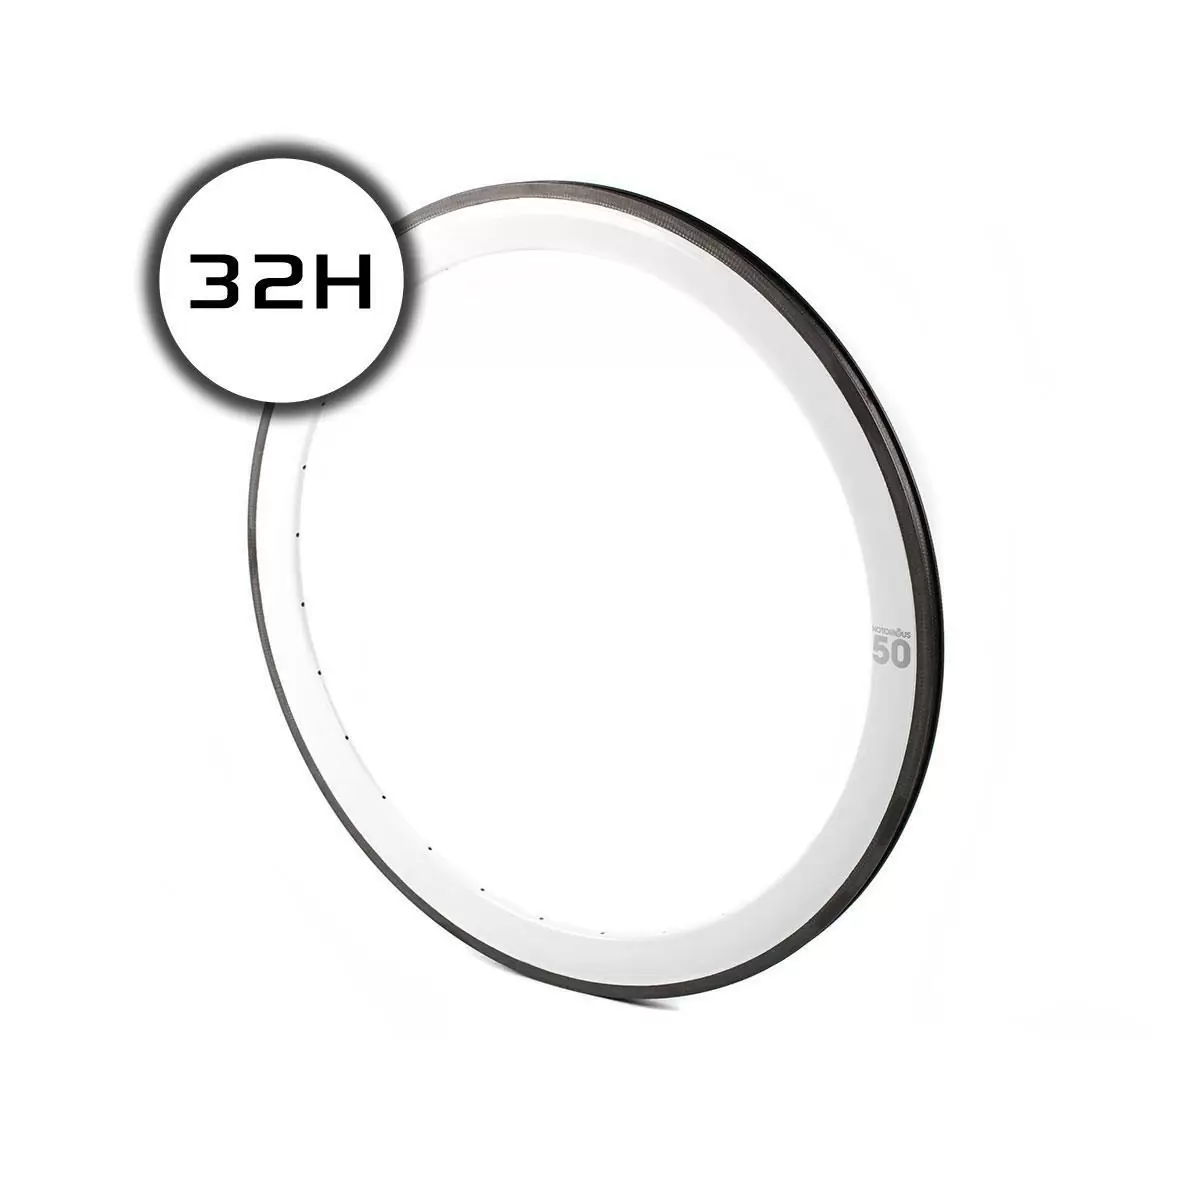 cerchio notorious 50 700c carbon 32h msw bianco - image